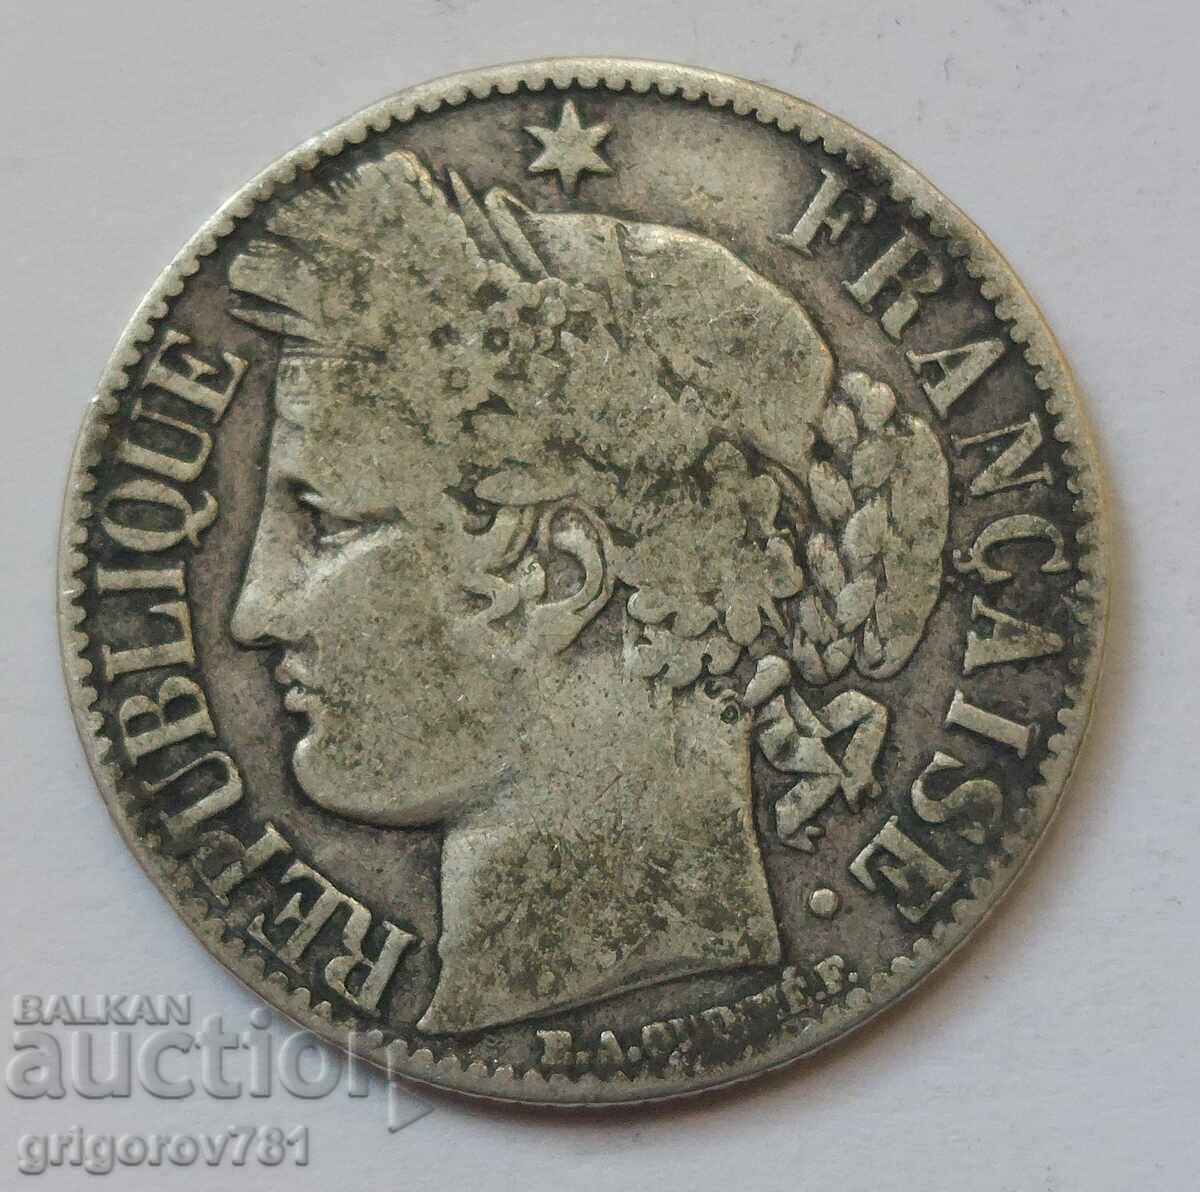 Ασήμι 1 φράγκου Γαλλία 1871 A - Ασημένιο νόμισμα #34